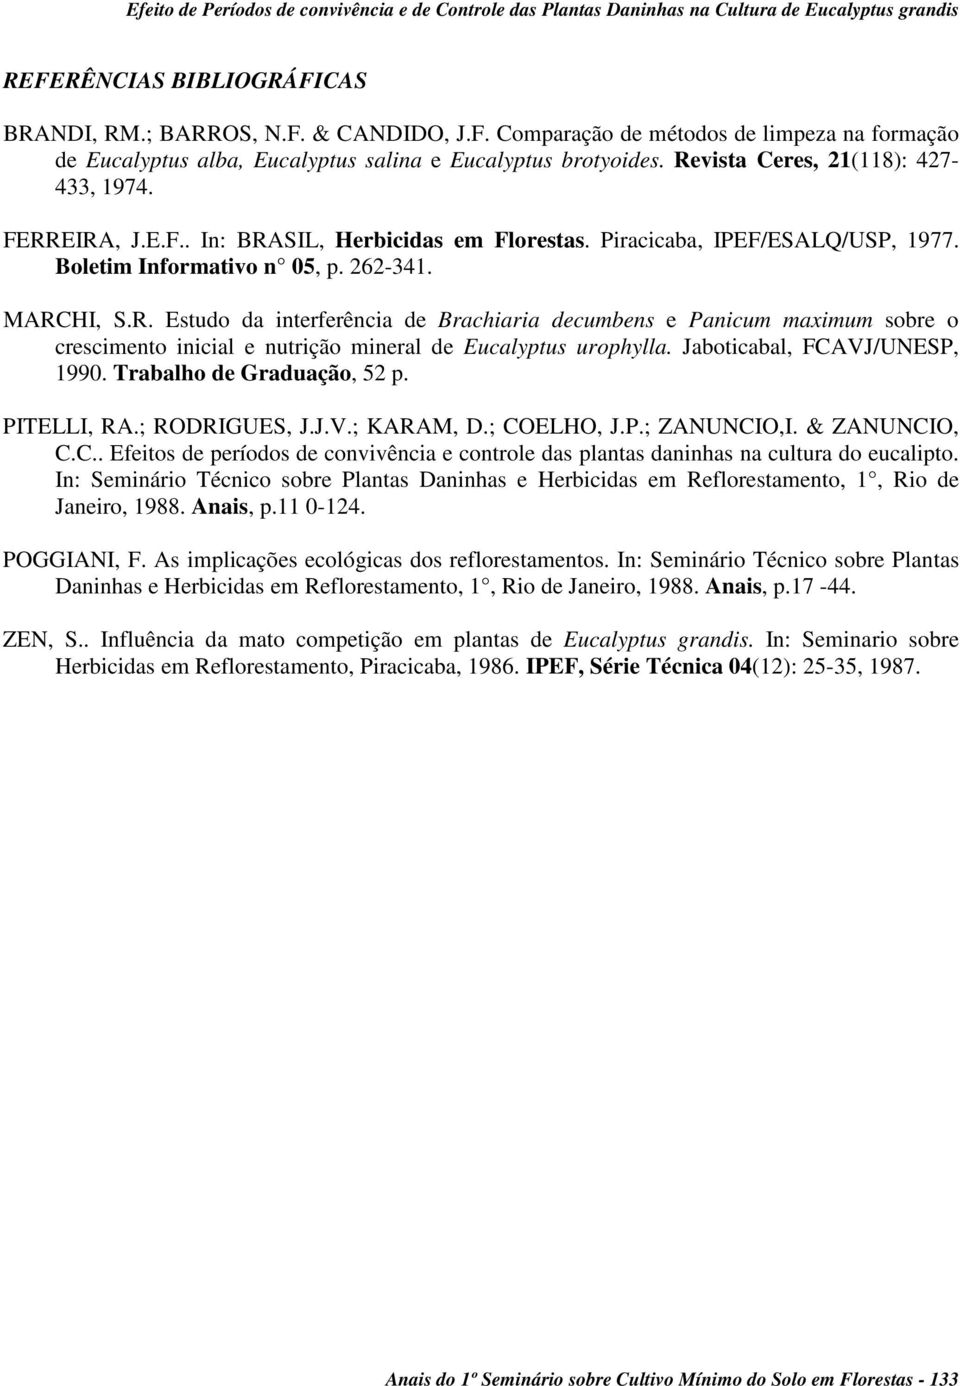 Revista Ceres, 21(118): 427-433, 1974. FERREIRA, J.E.F.. In: BRASIL, Herbicidas em Florestas. Piracicaba, IPEF/ESALQ/USP, 1977. Boletim Informativo n 05, p. 262-341. MARCHI, S.R. Estudo da interferência de Brachiaria decumbens e Panicum maximum sobre o crescimento inicial e nutrição mineral de Eucalyptus urophylla.